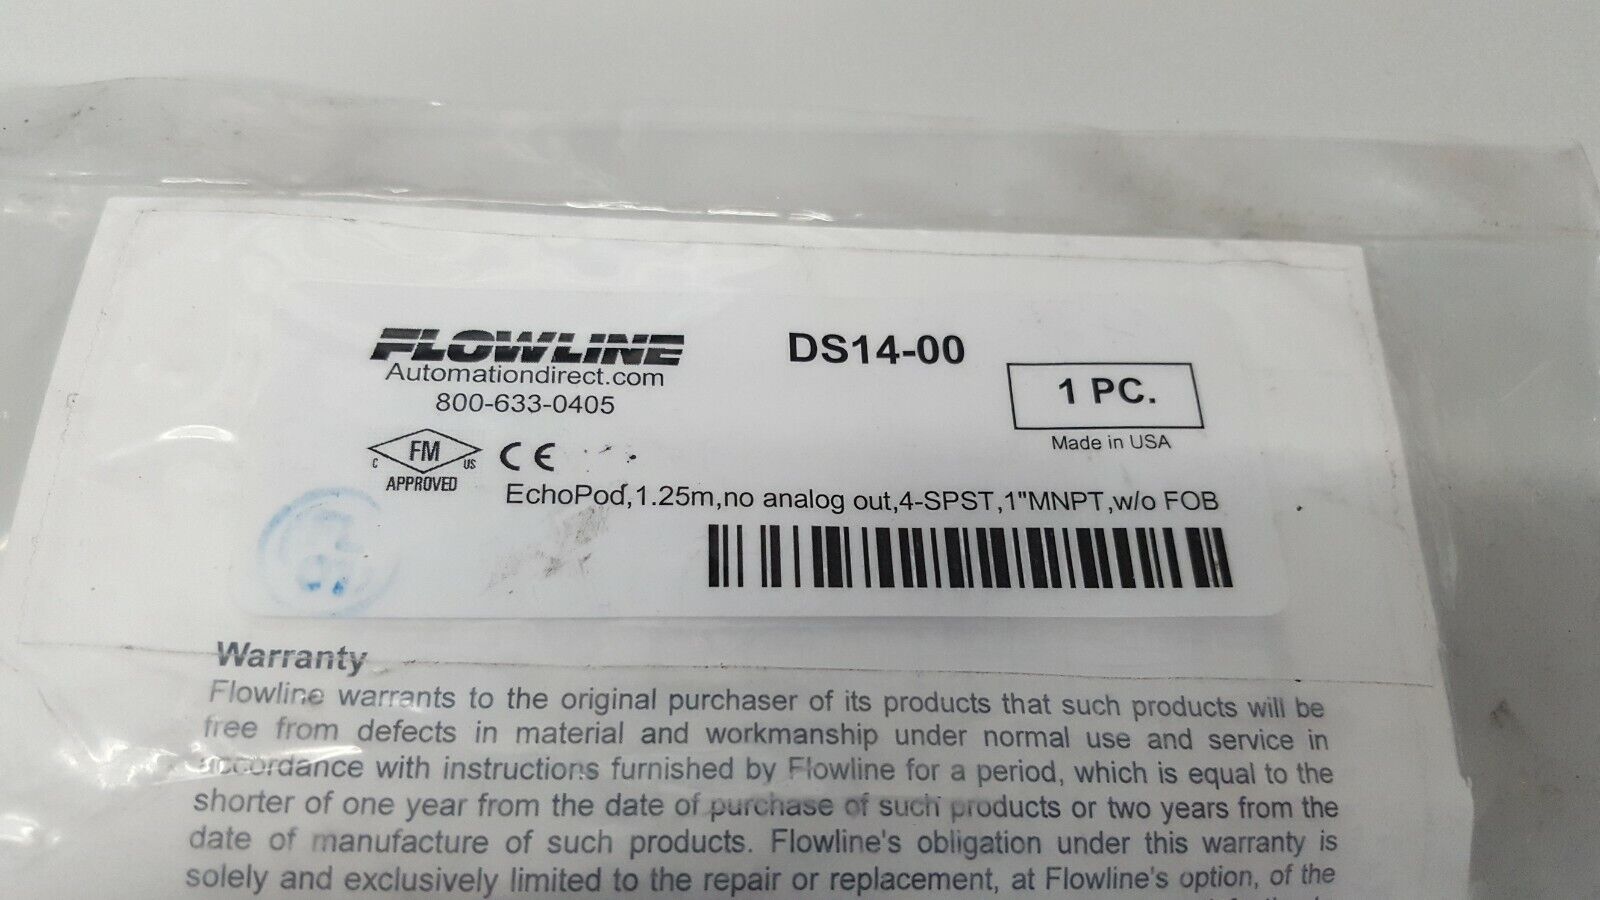 FLOWLINE EchoPod DS14-00 Ultrasonic Level Sensor